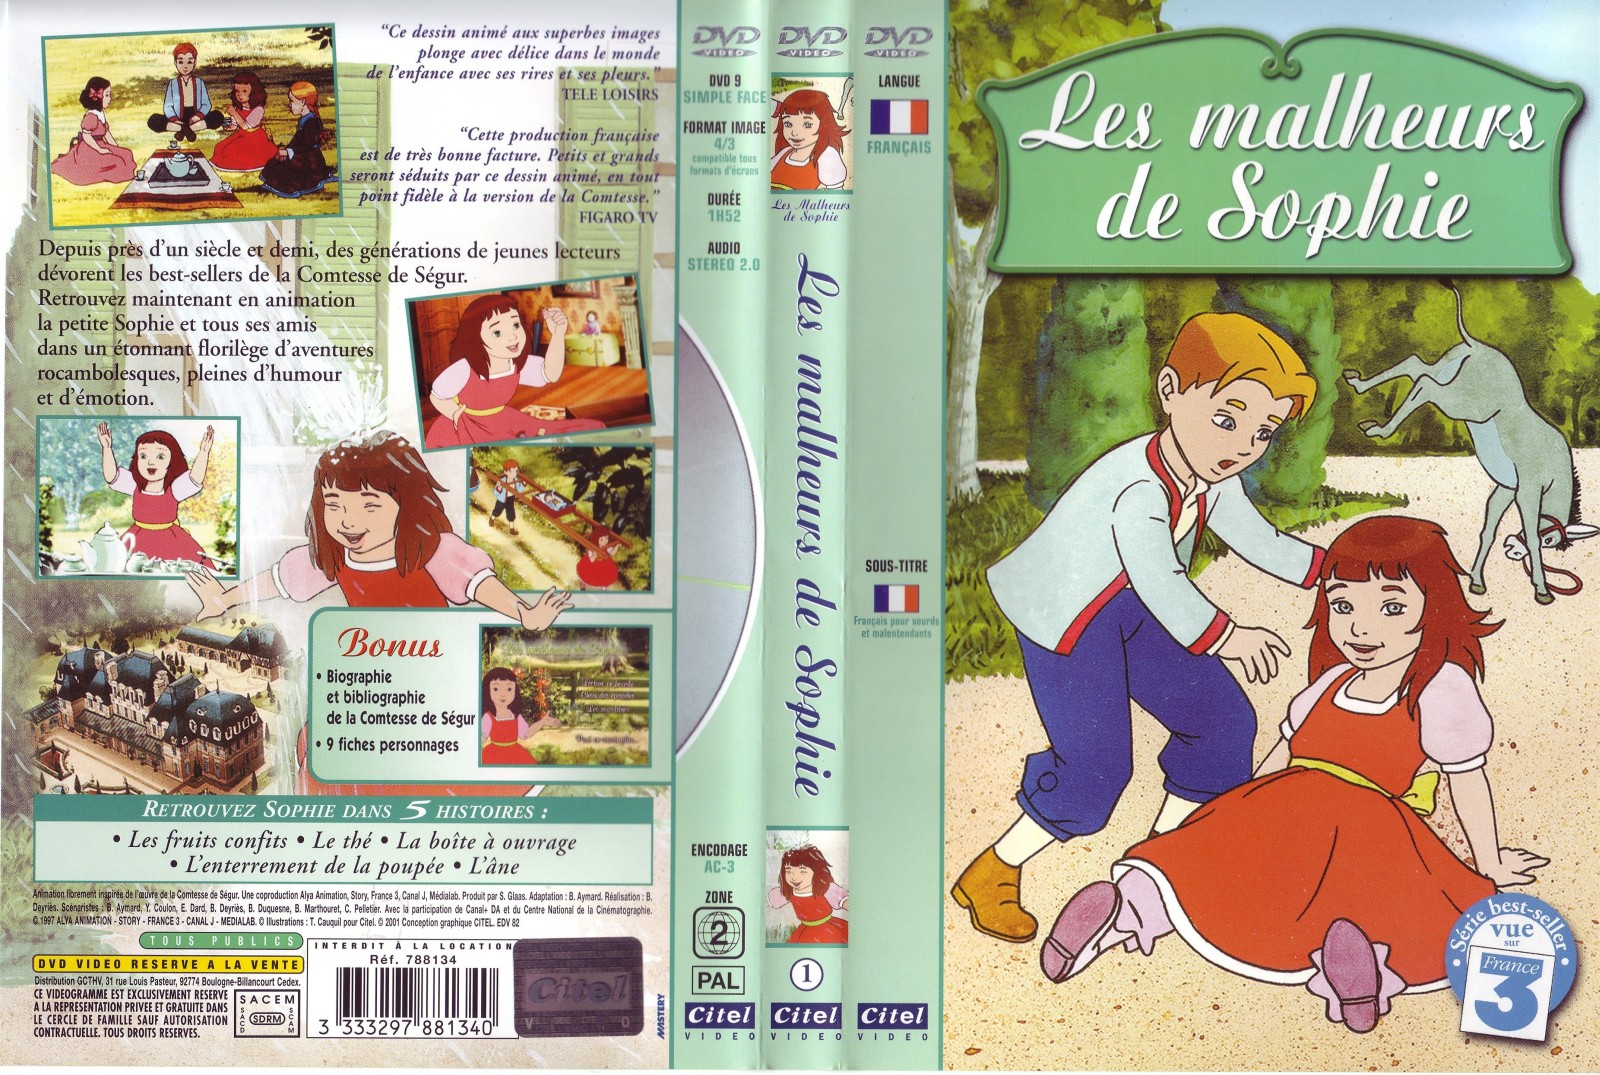 Jaquette DVD Les malheurs de Sophie vol 1